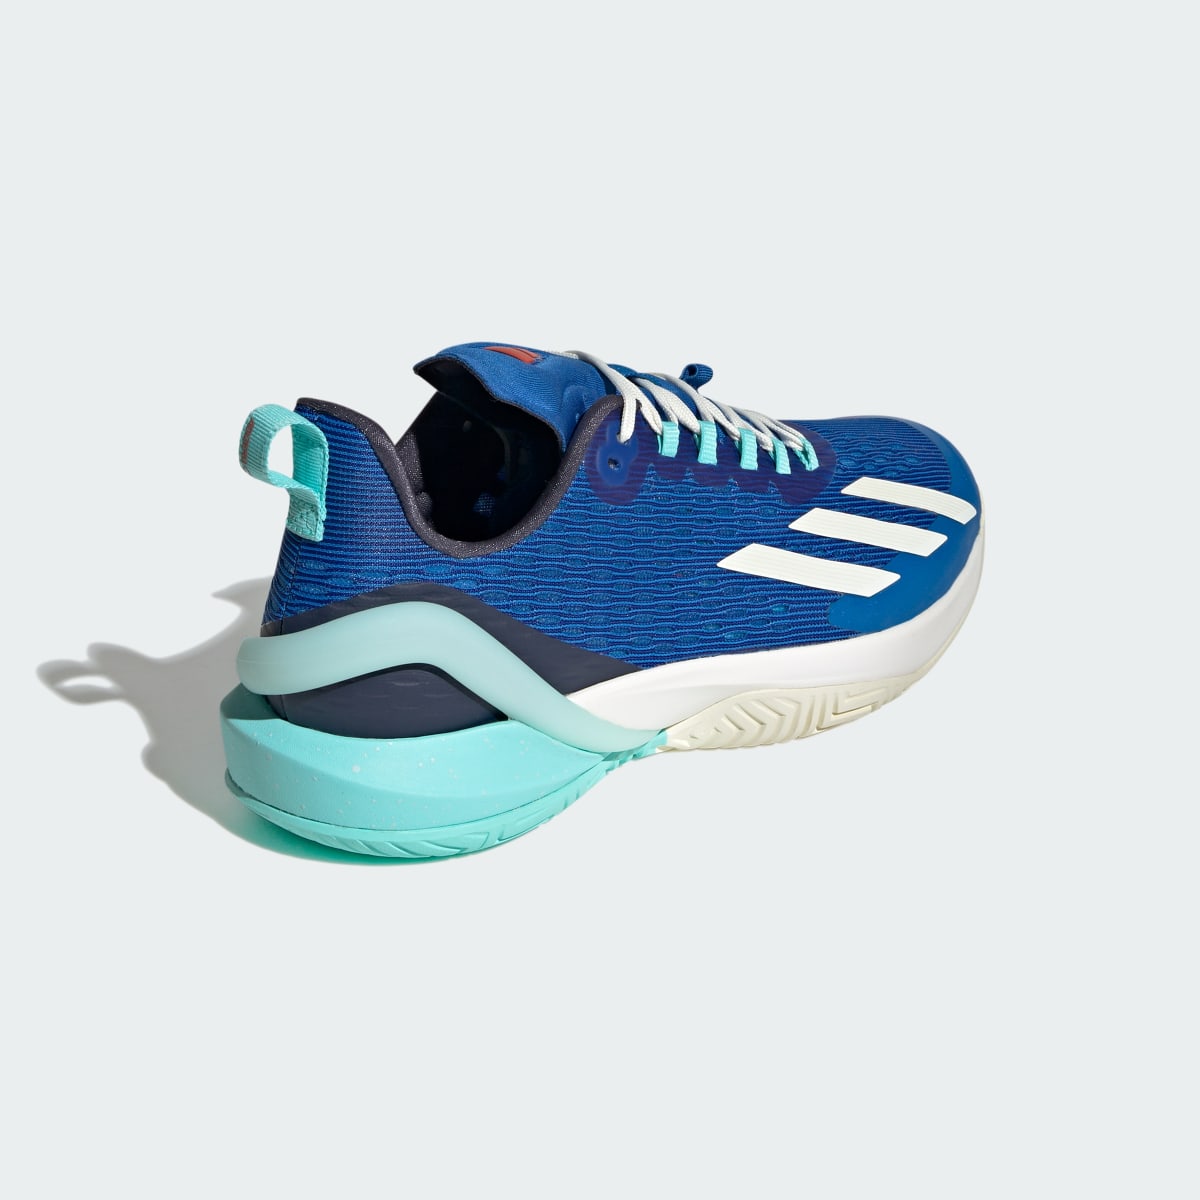 Adidas adizero Cybersonic Tennis Shoes. 6